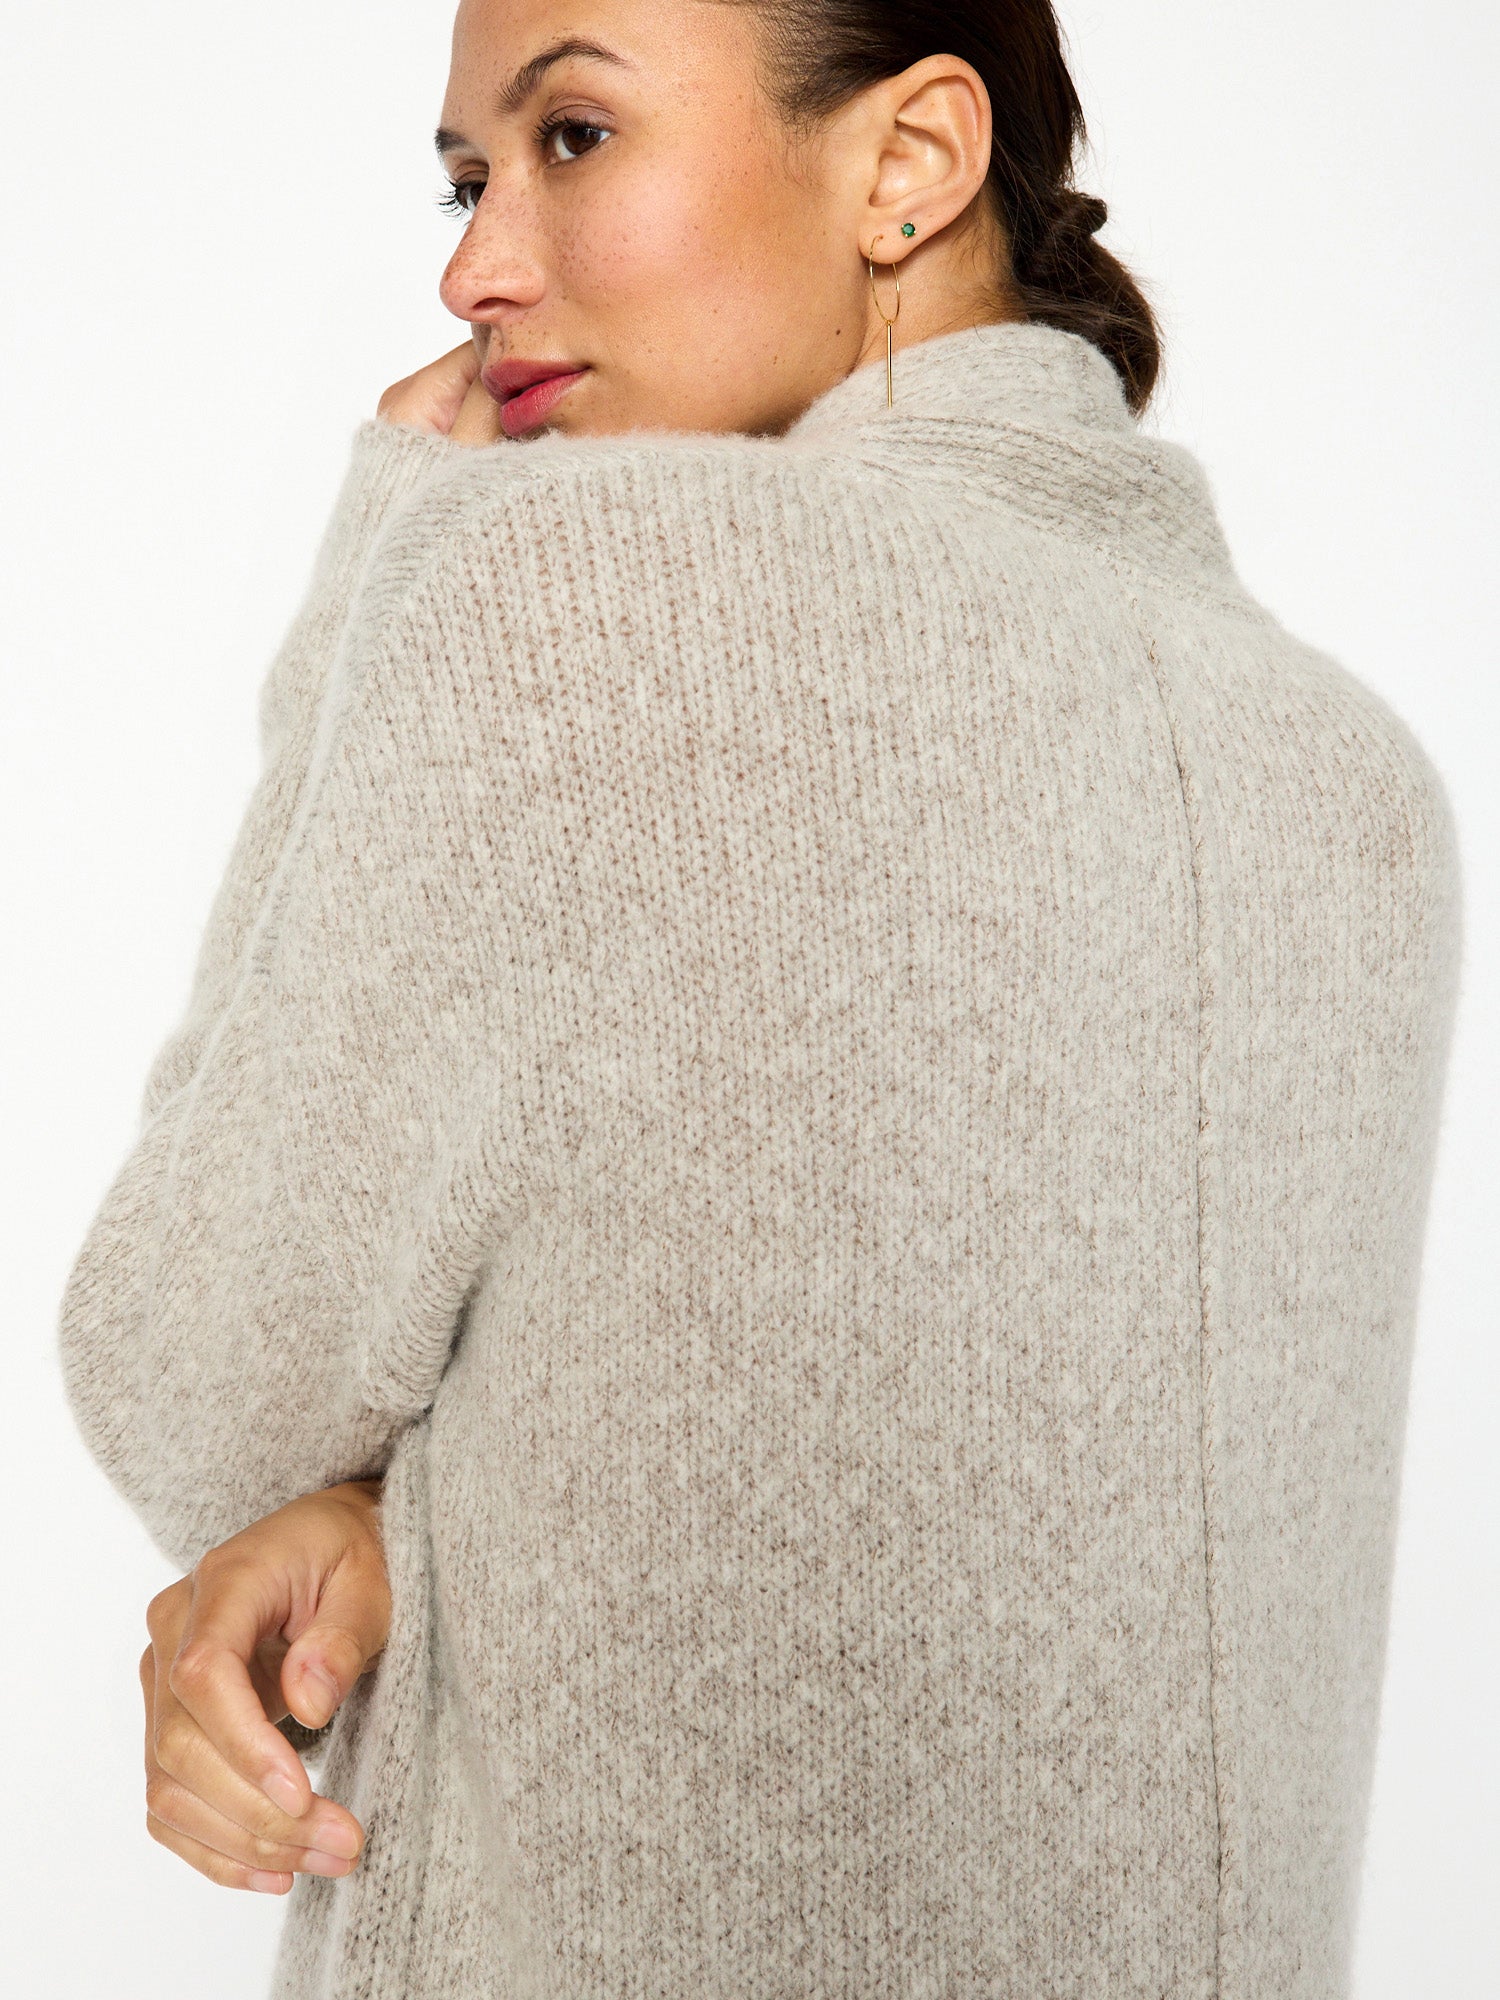 Thela light grey fringe cashmere wool duster cardigan close up